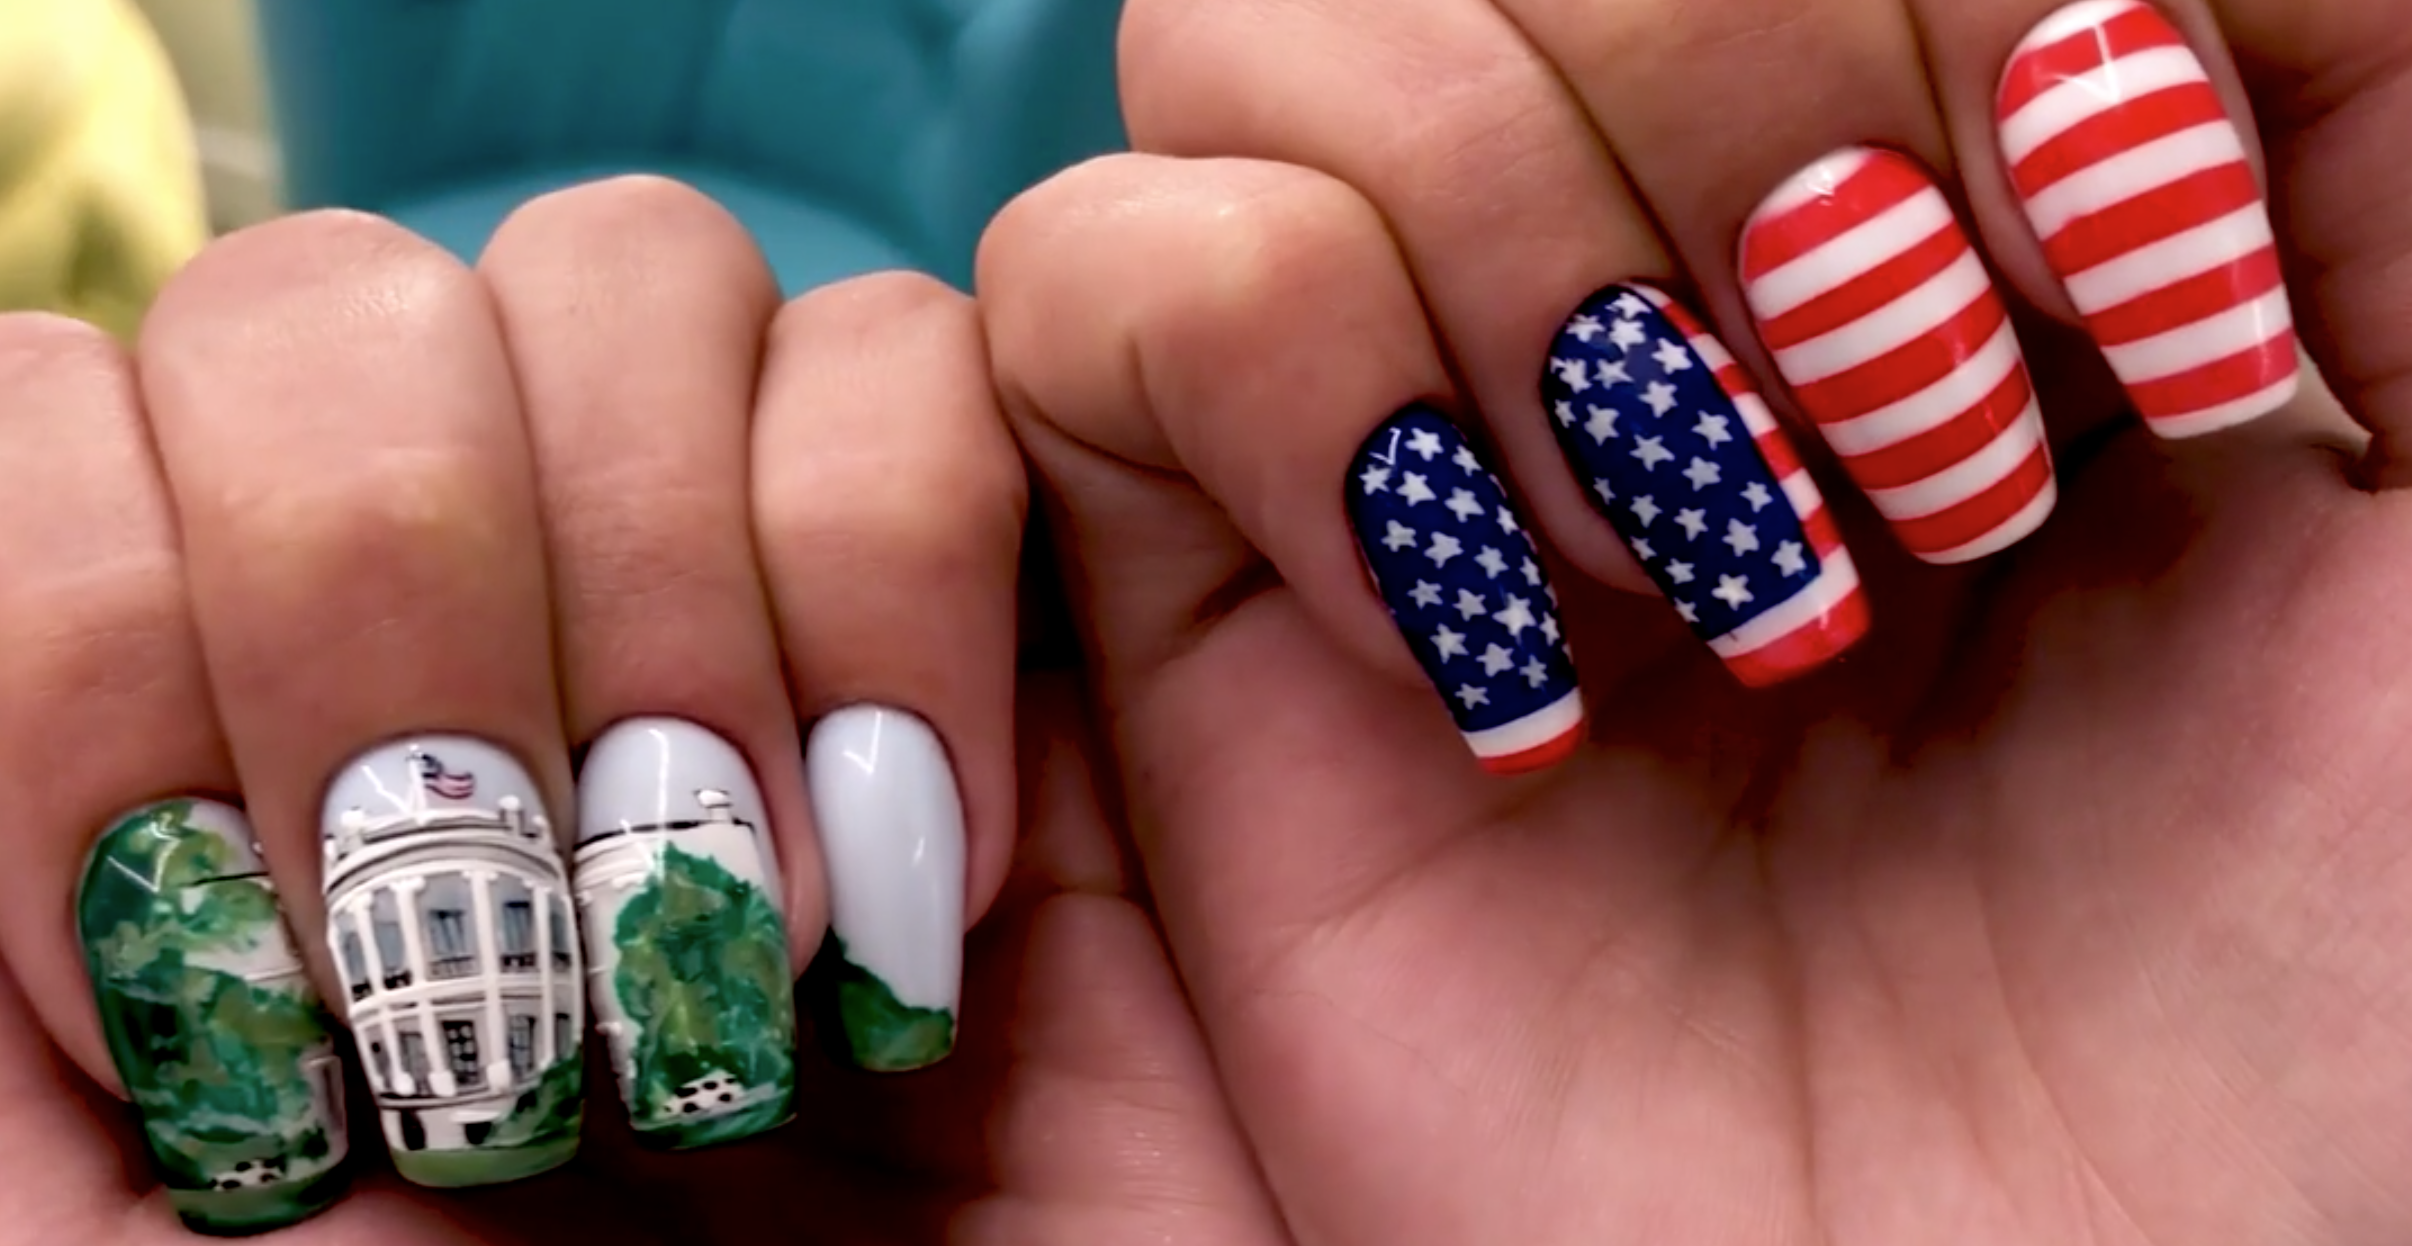 2. Russian manicure nail art ideas - wide 6